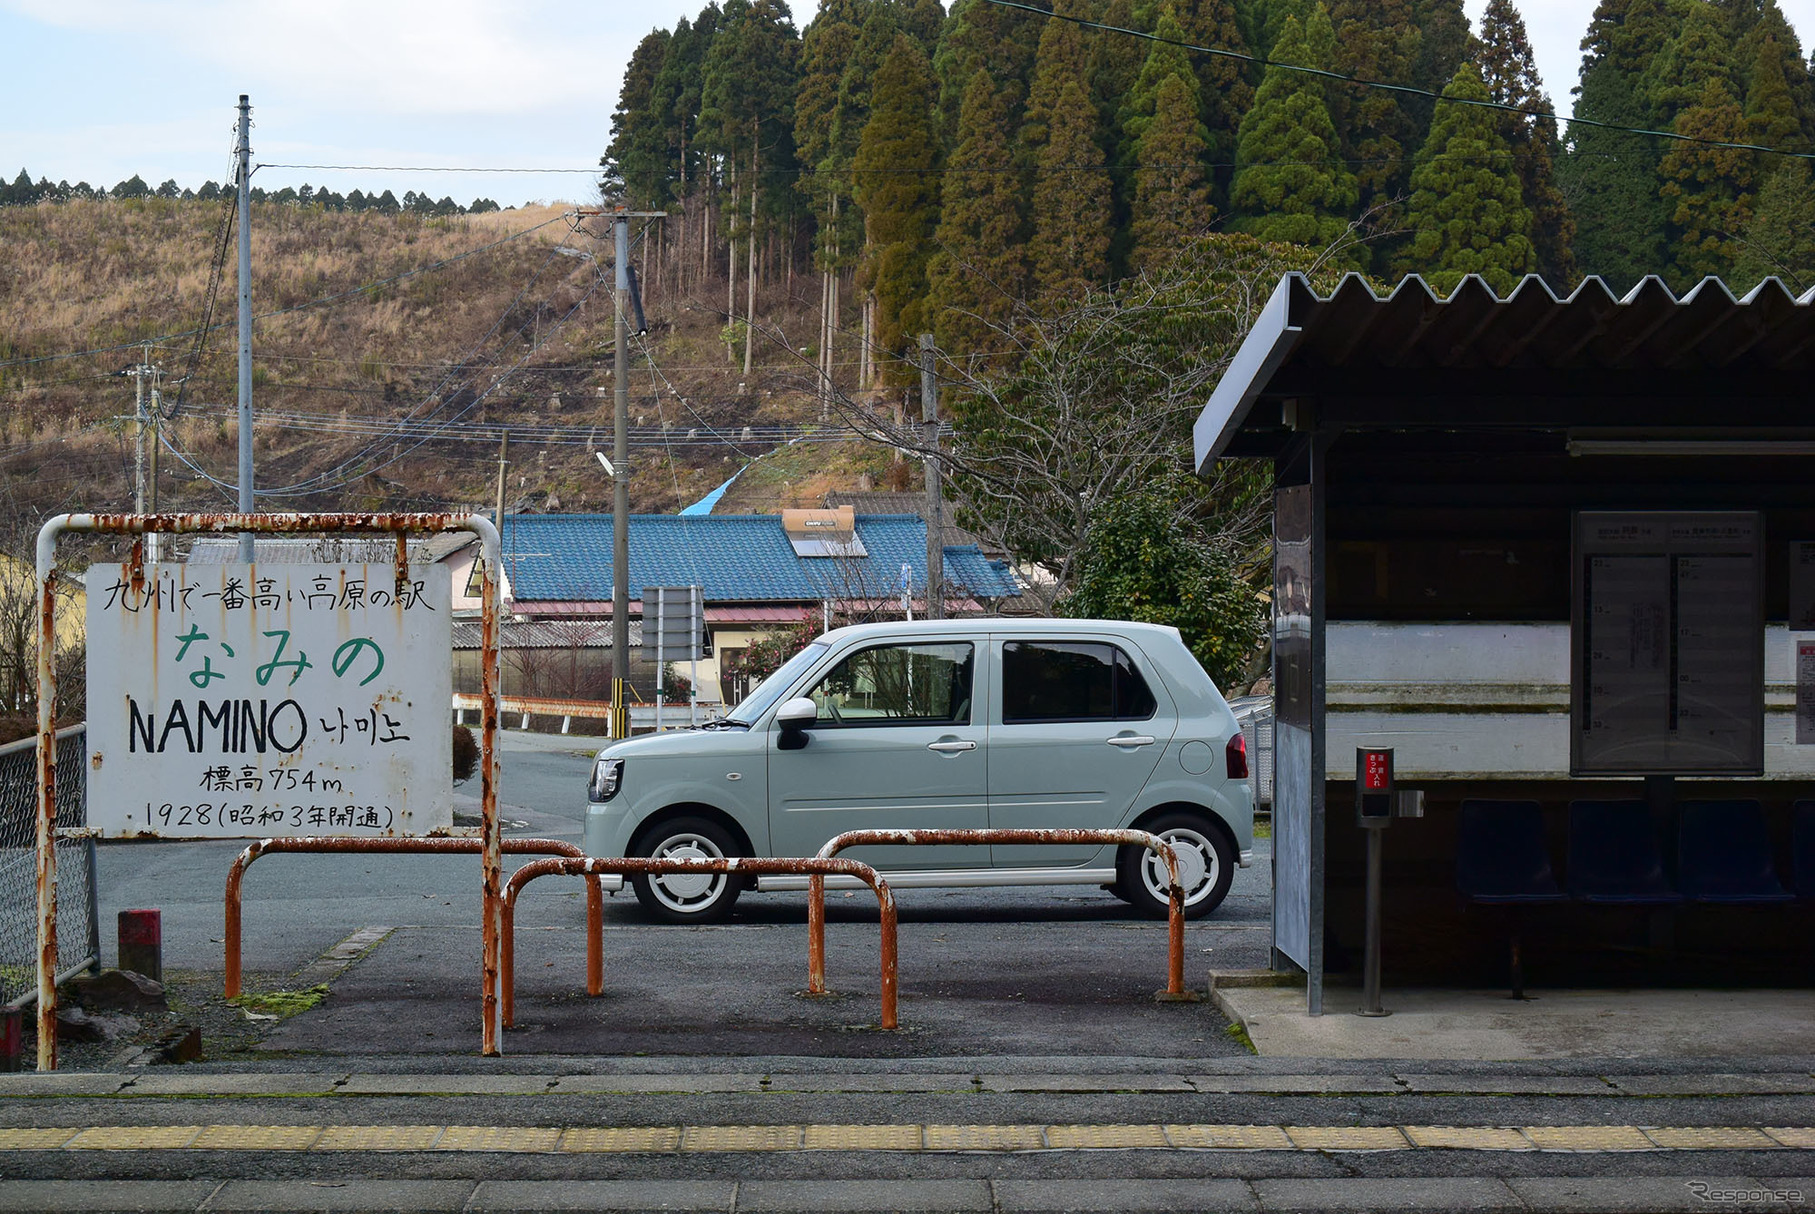 熊本地震で今も一部不通区間が残る豊肥本線(熊本と大分を結ぶローカル線)の波野駅にて。九州で最も標高が高い駅である。